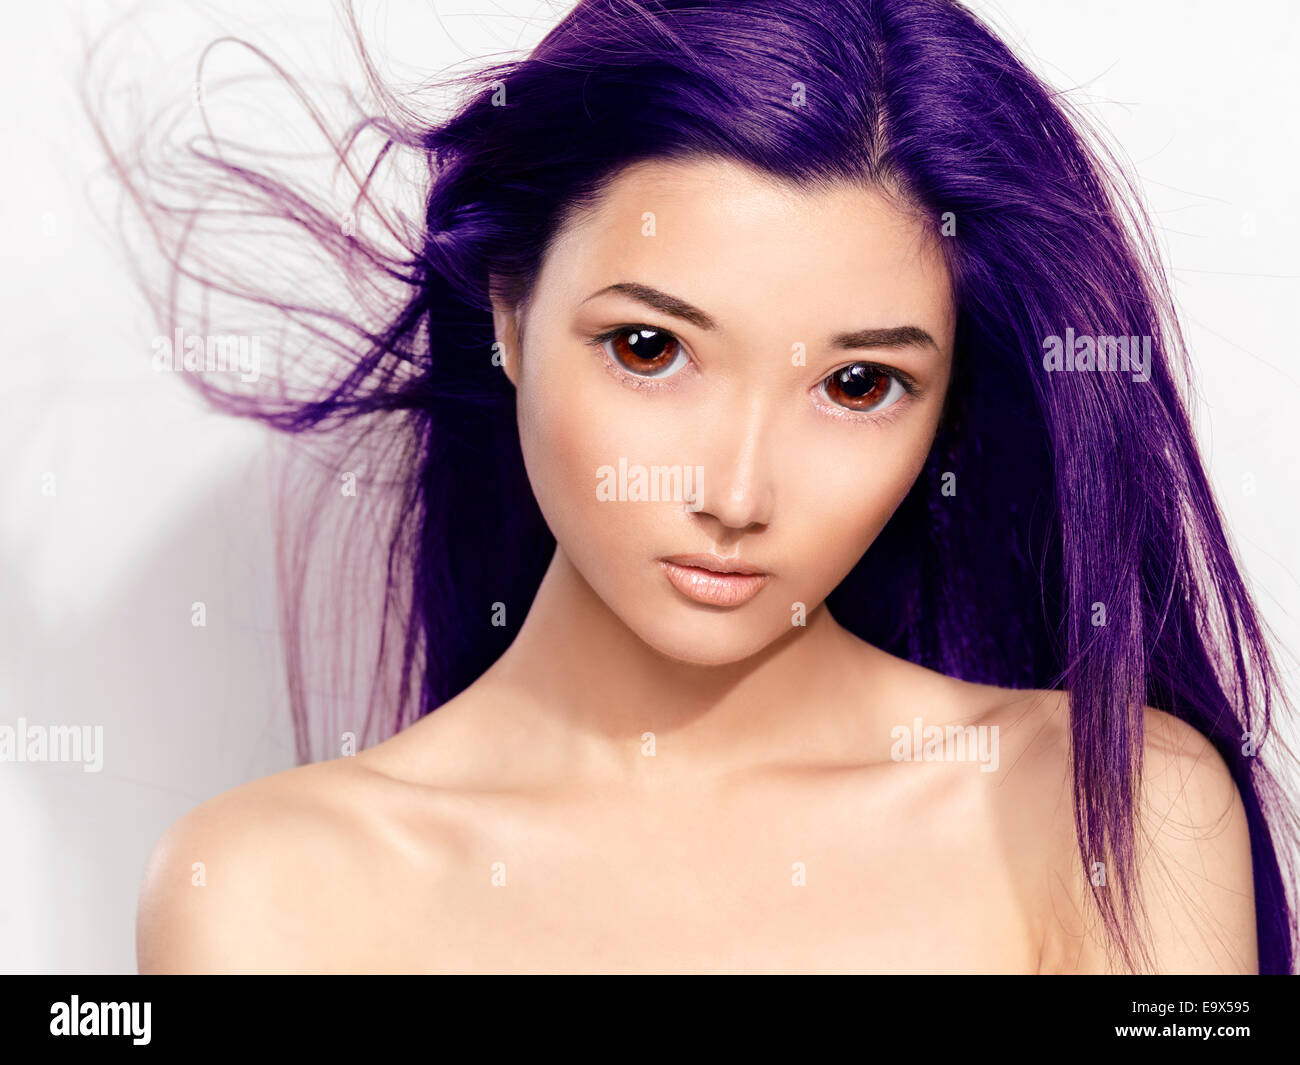 Bellezza ritratto di un simpatico giovane donna asiatica faccia con grandi occhi e battenti capelli viola ritoccata in giapponese in stile anime Foto Stock